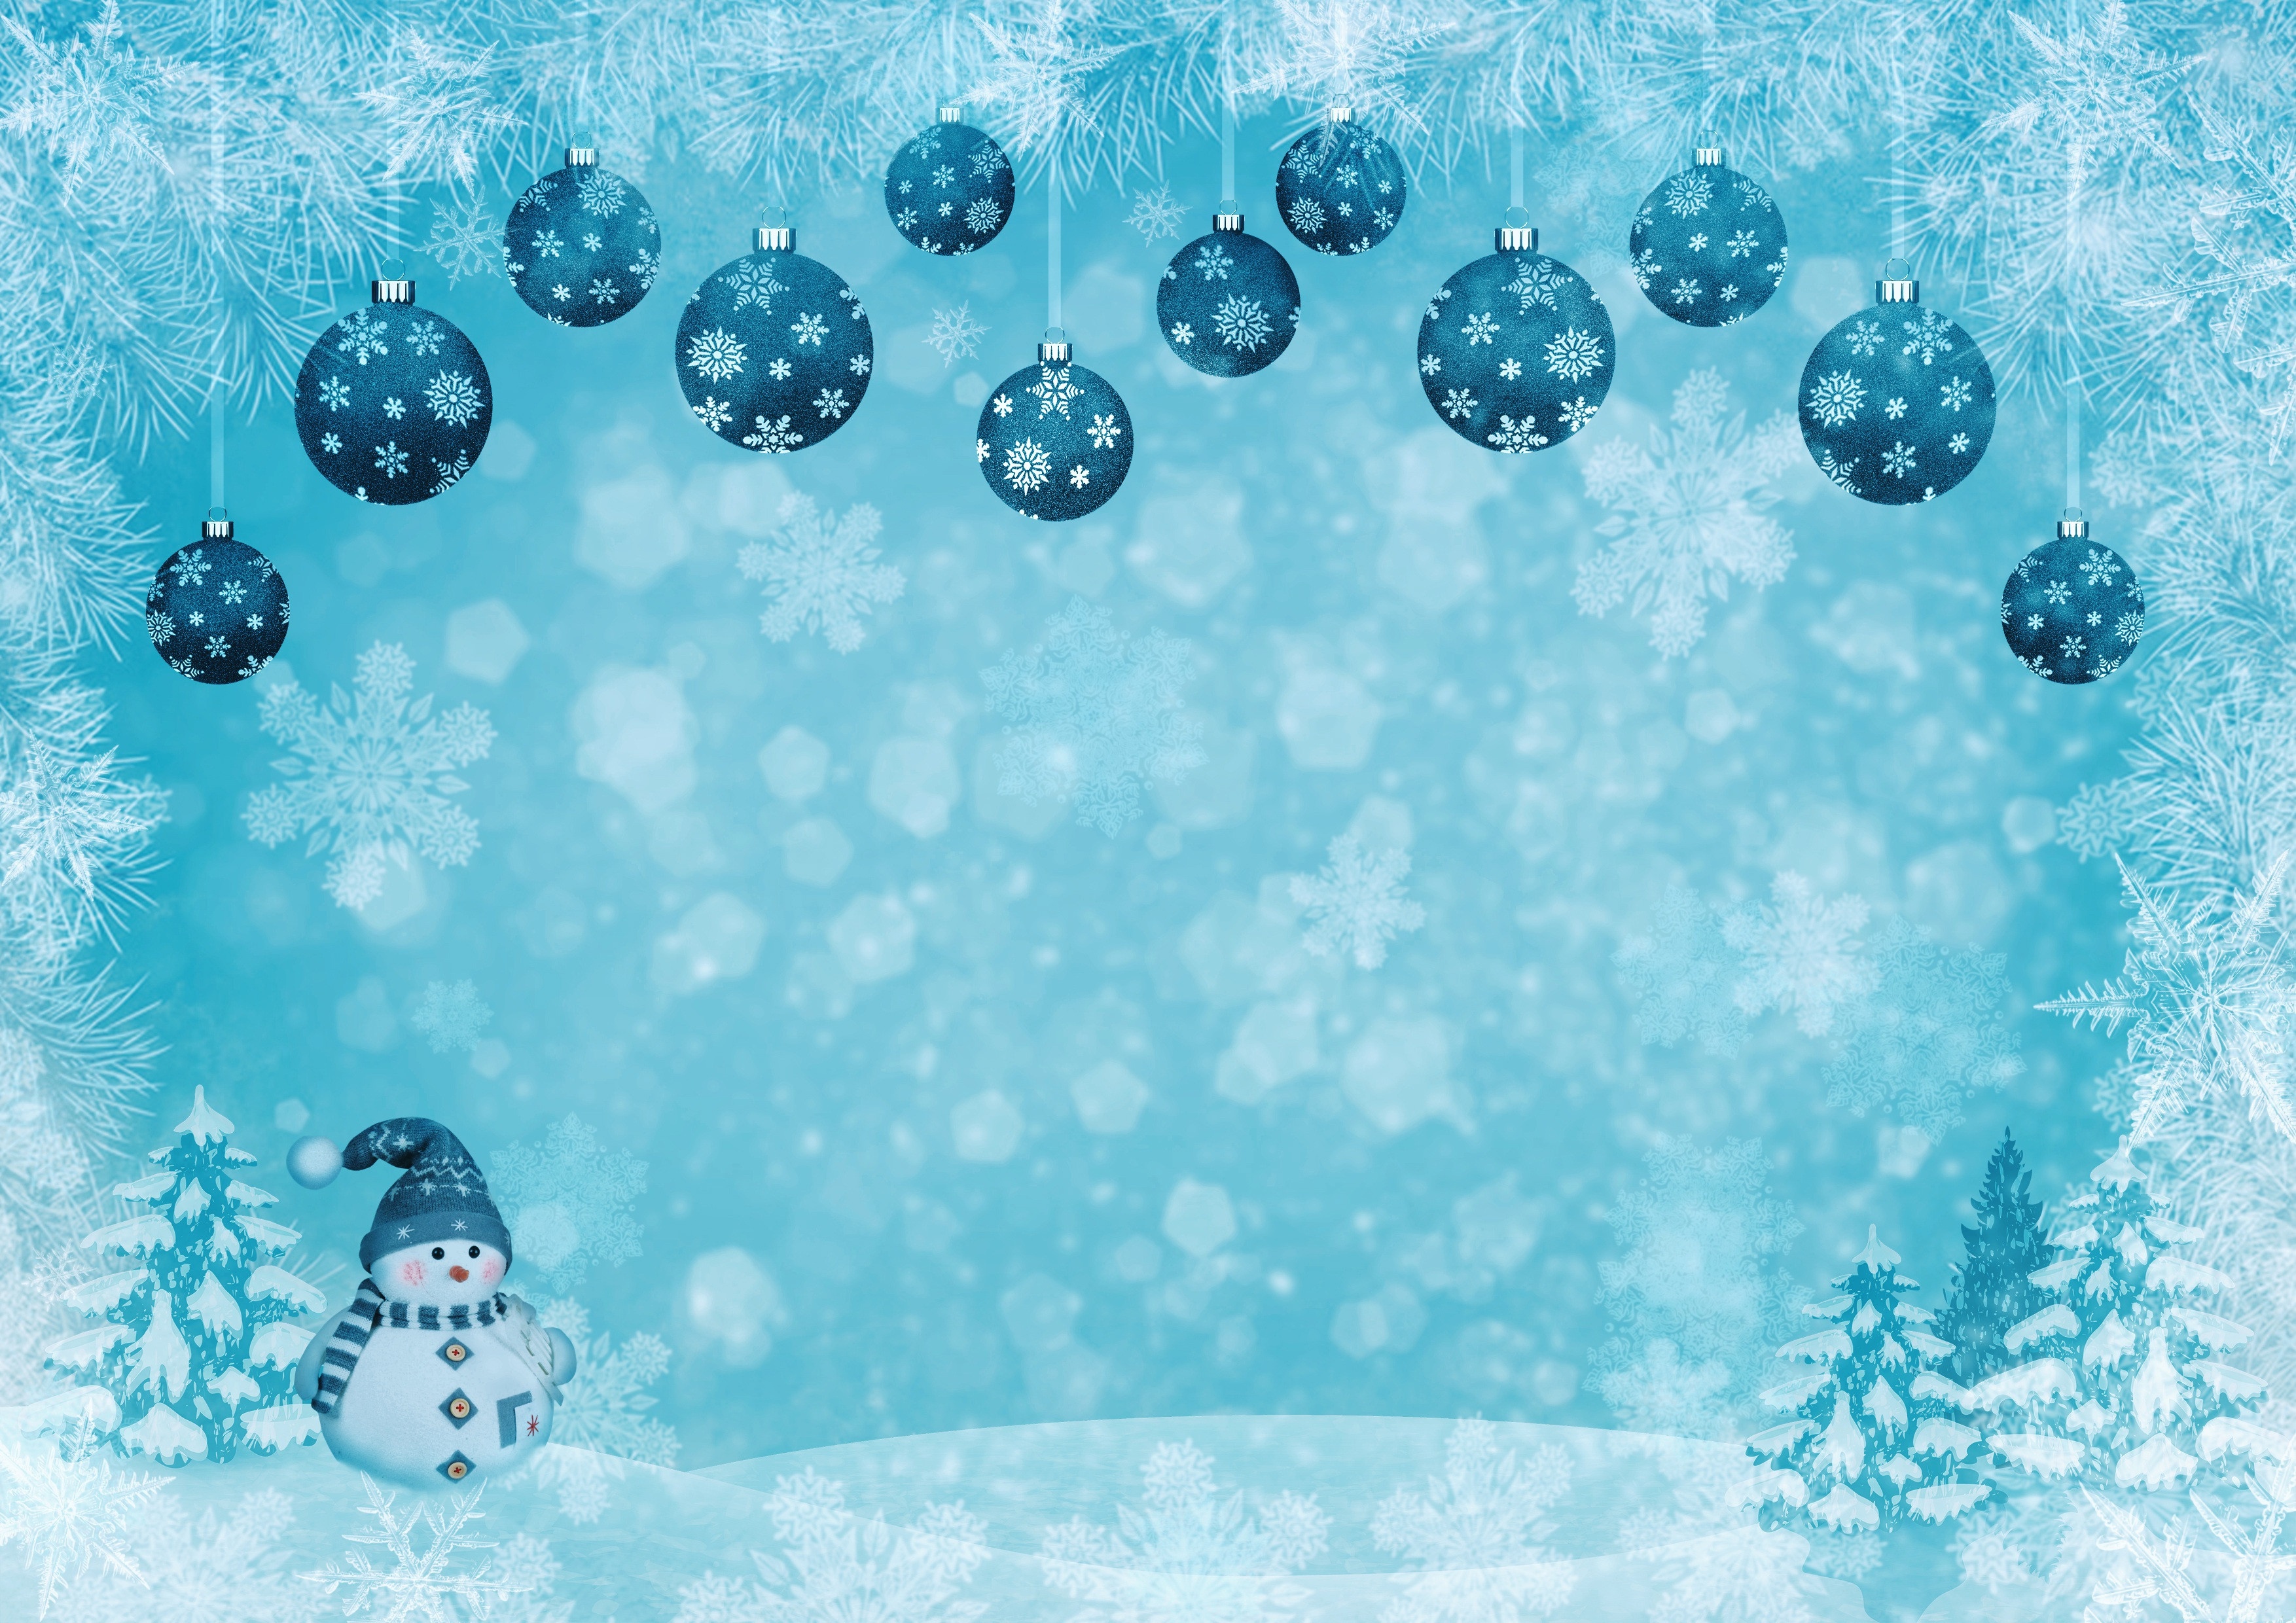 Скачать обои бесплатно Снег, Снежинки, Рождество, Снеговик, Снегопад, Художественные картинка на рабочий стол ПК